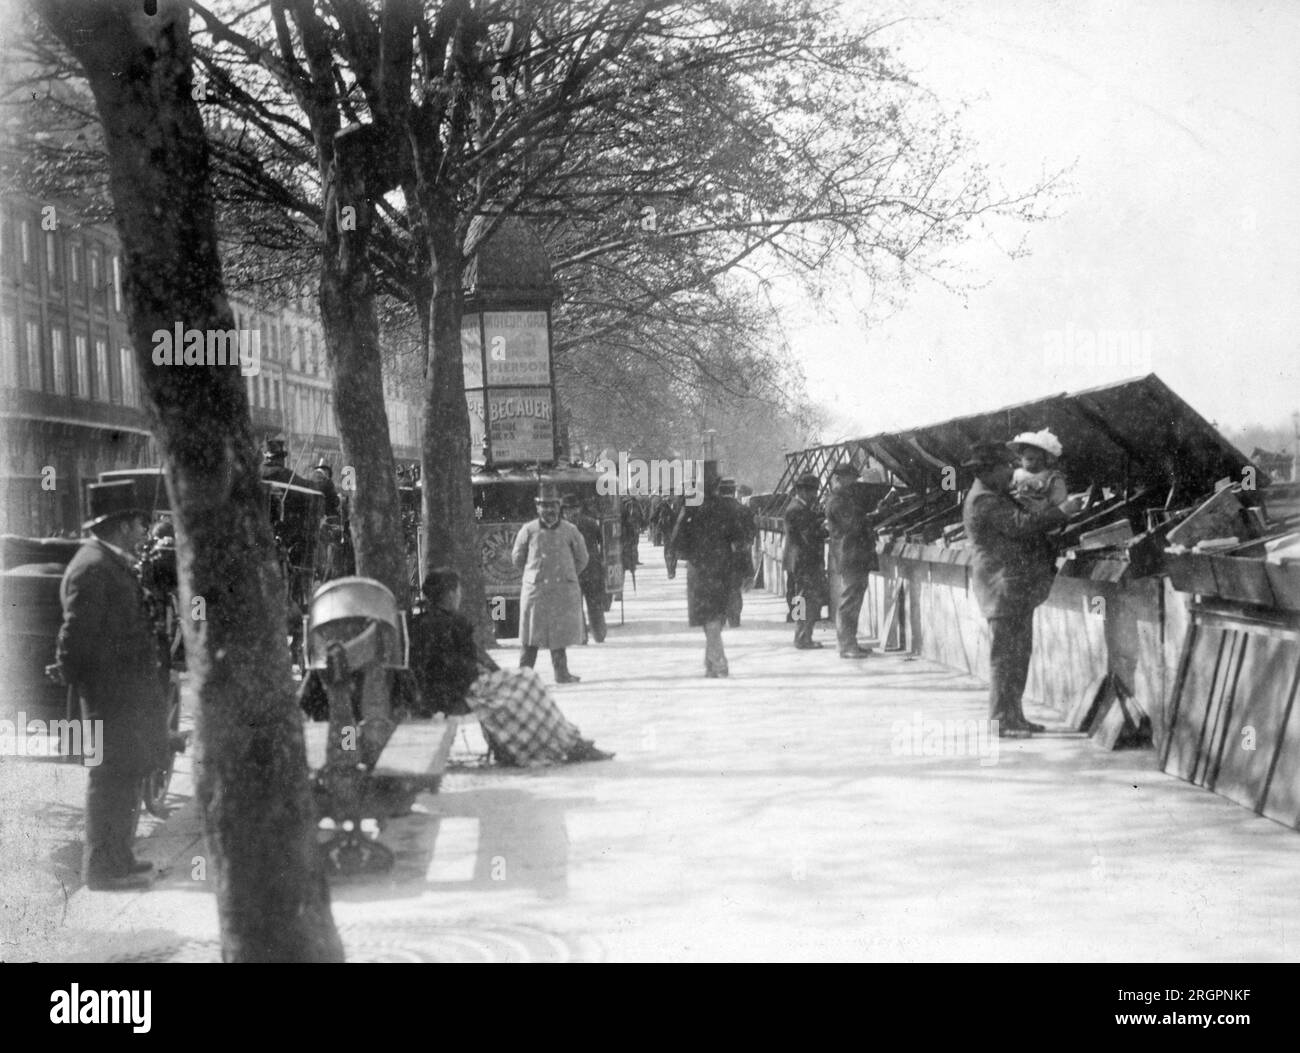 Bouquinistes sur les quais de la Seine a Parigi. - bouquinistes, quai Voltaire, Parigi. 1898. Foto Eugène Atget Foto Stock